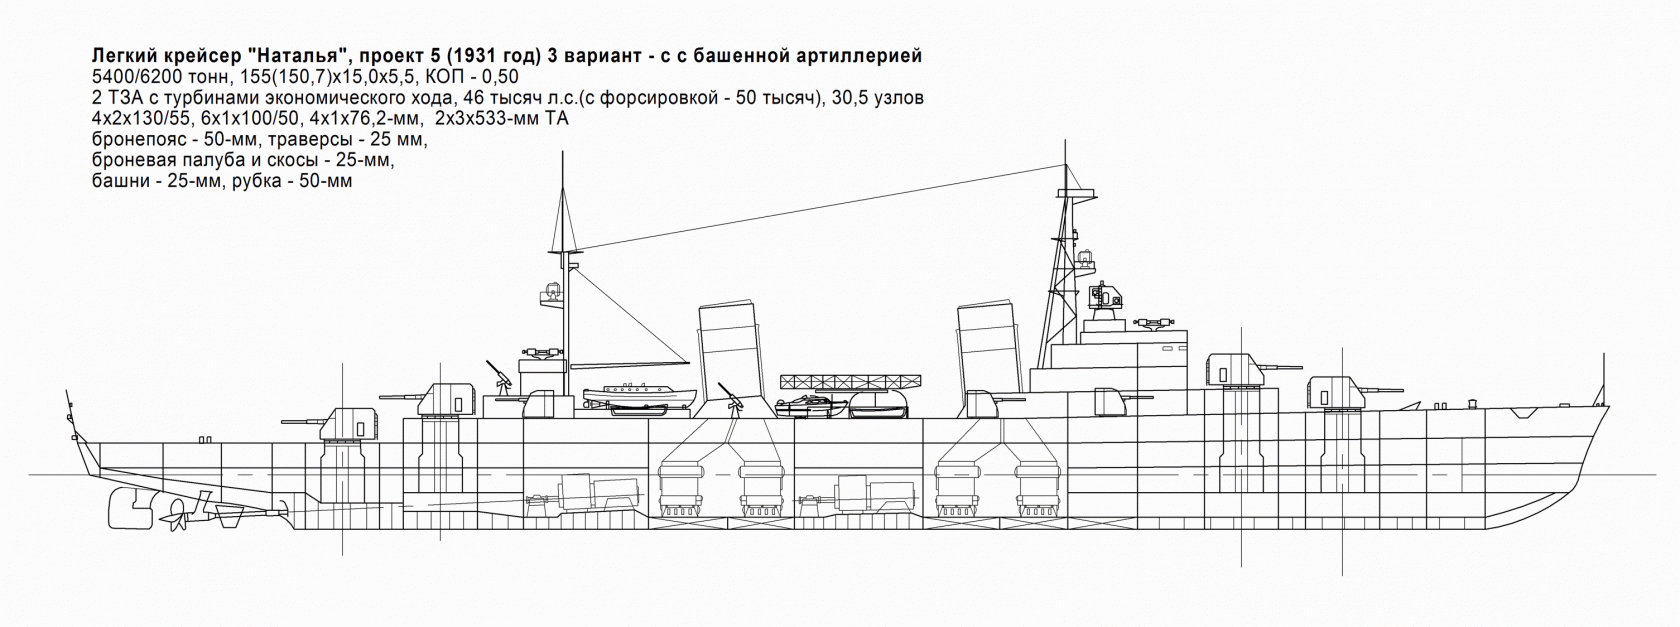 Часть 4. Крейсера типа "Наталья" и "Клавдия" - развитие крейсеров типа "Светлана"